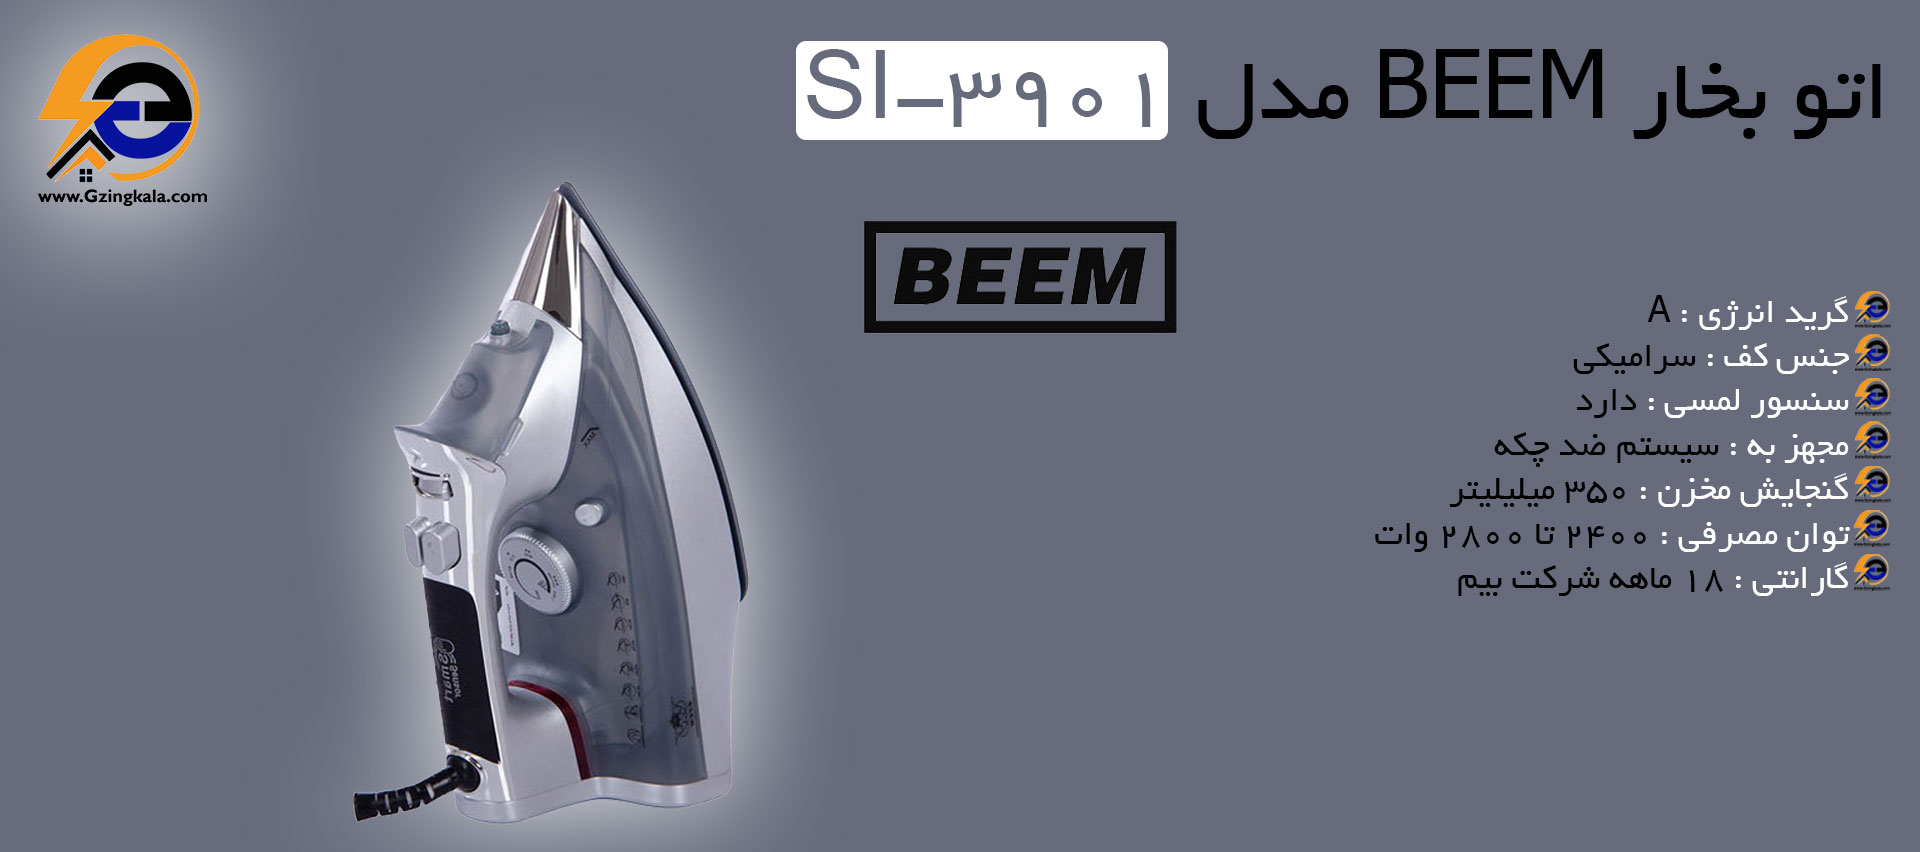 اتو بخار BEEM مدل SI-3901